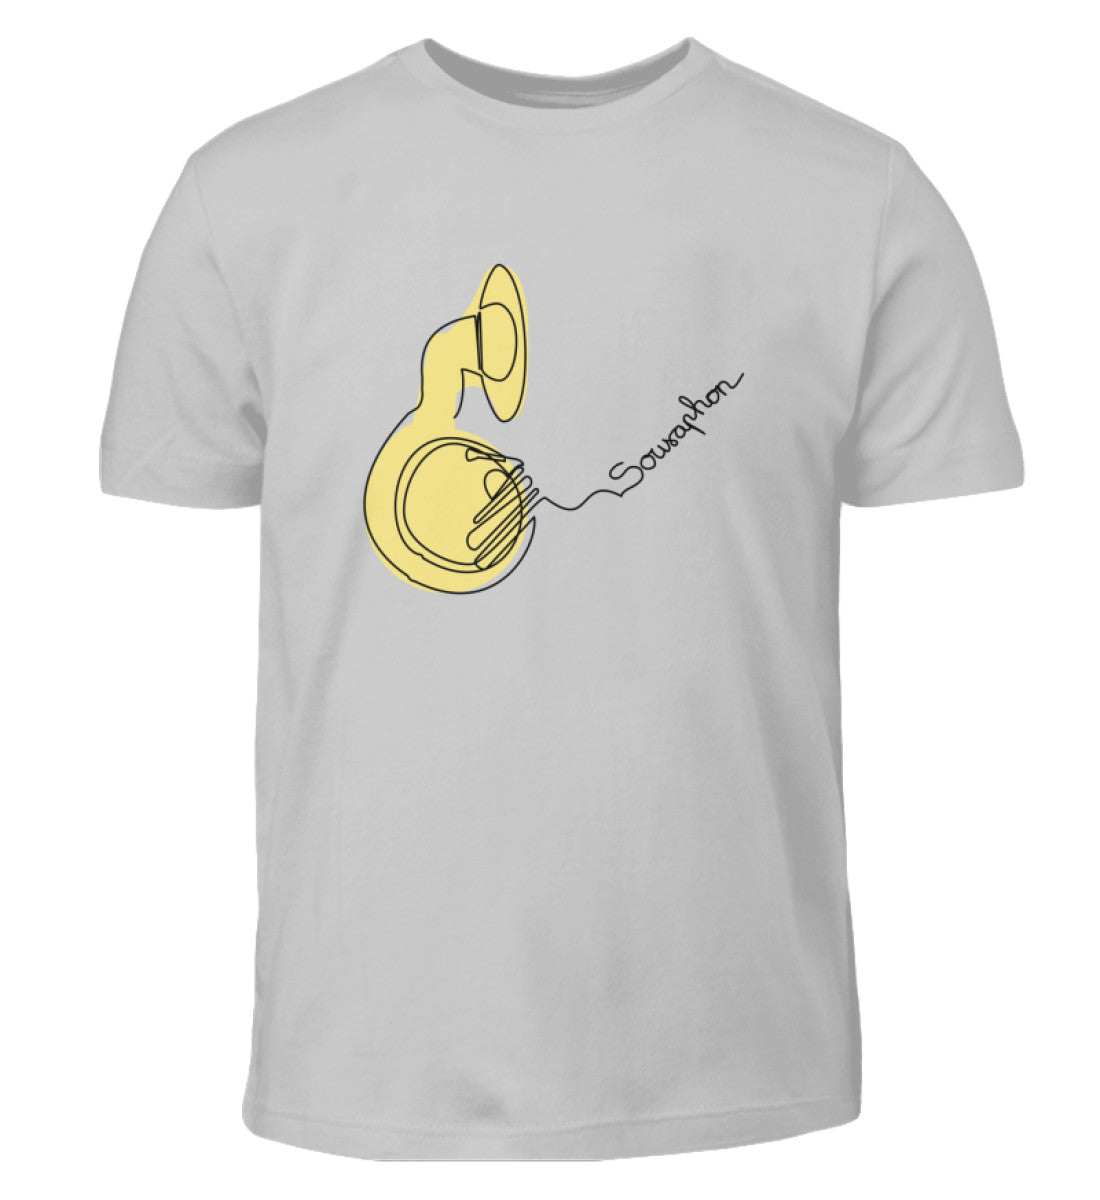 Sousaphon Kinder T-Shirt